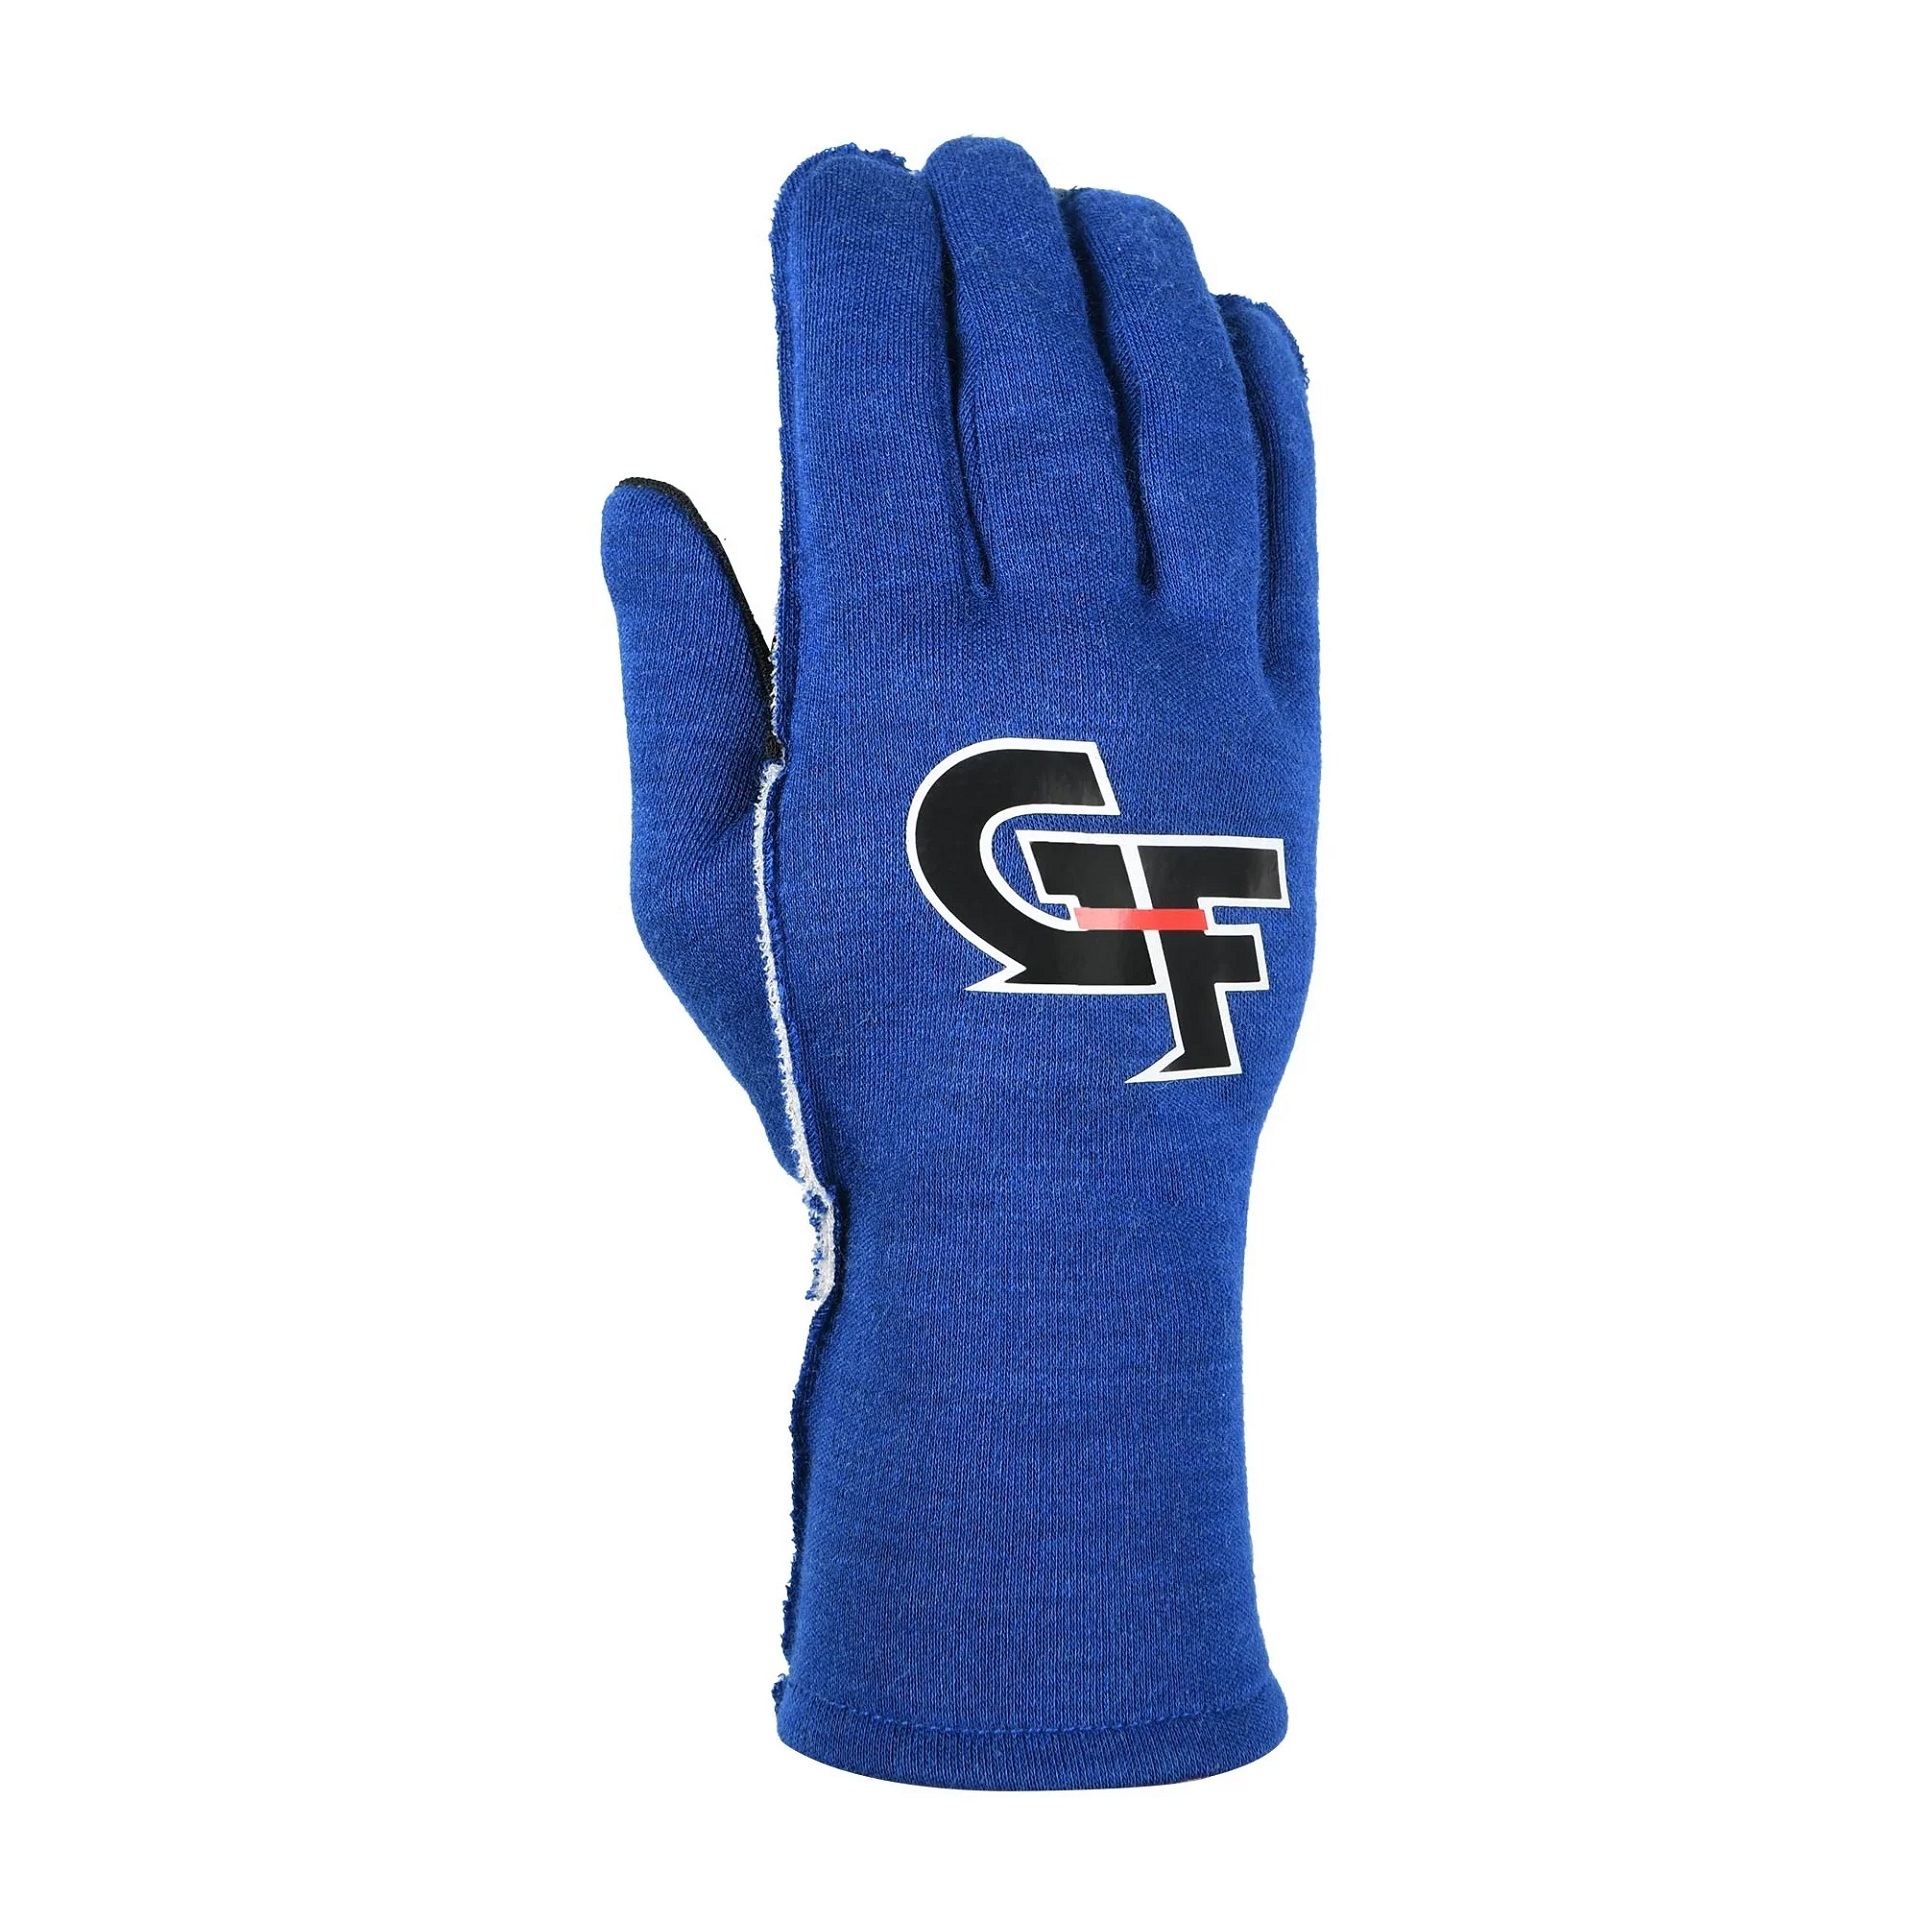 G-FORCE Gloves G-Limit Large Blue